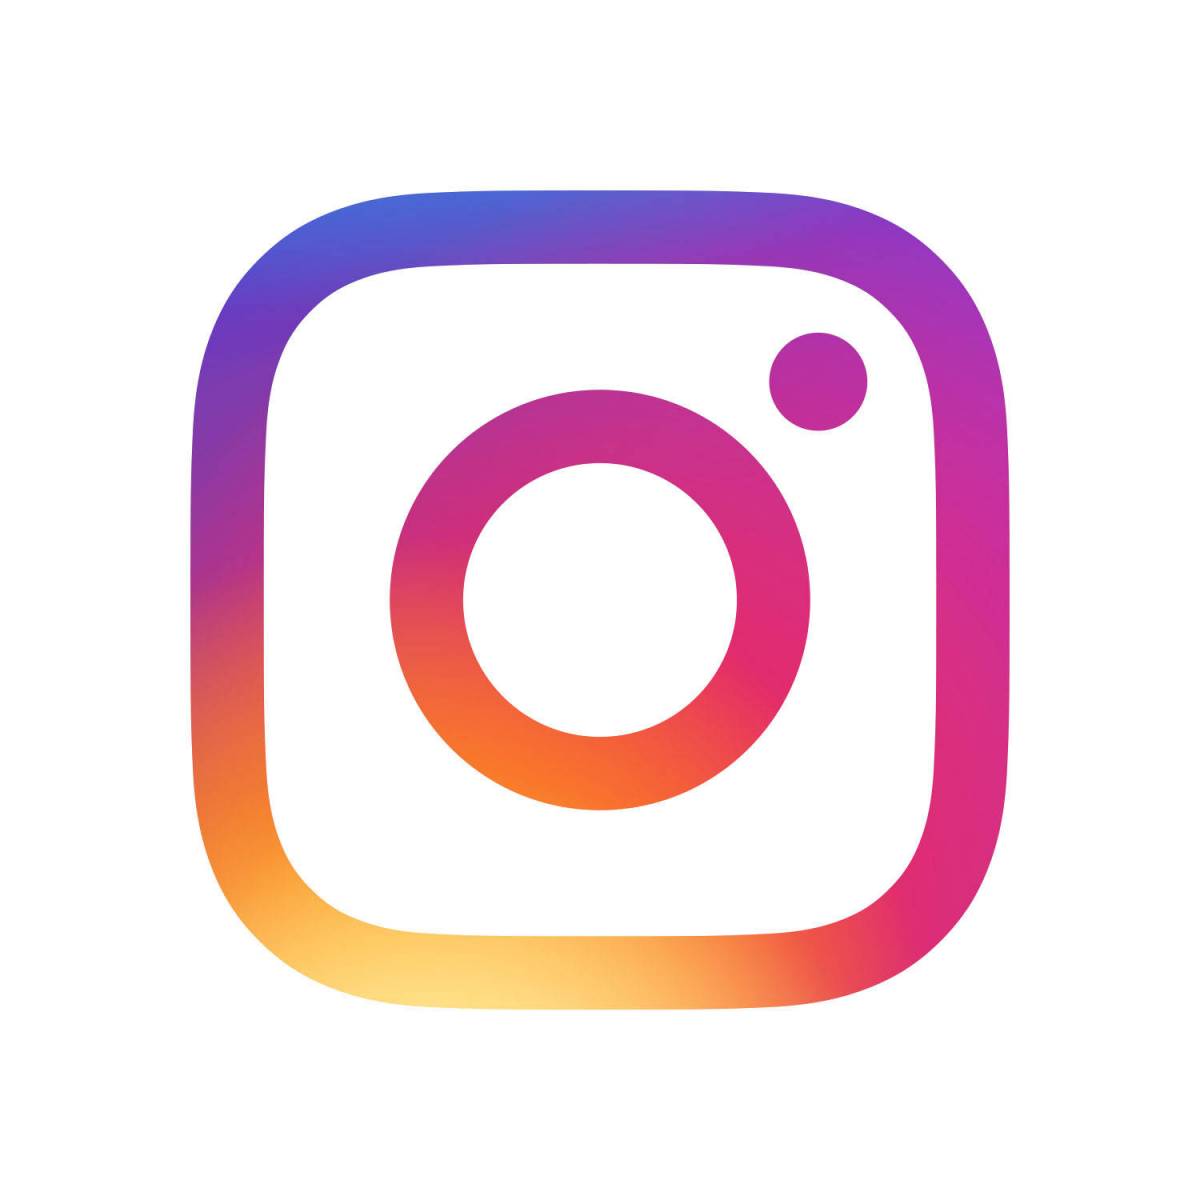 Instagram インスタグラム アプリアイコンの変え方 アイコンのdl 保存方法も Appliv Topics